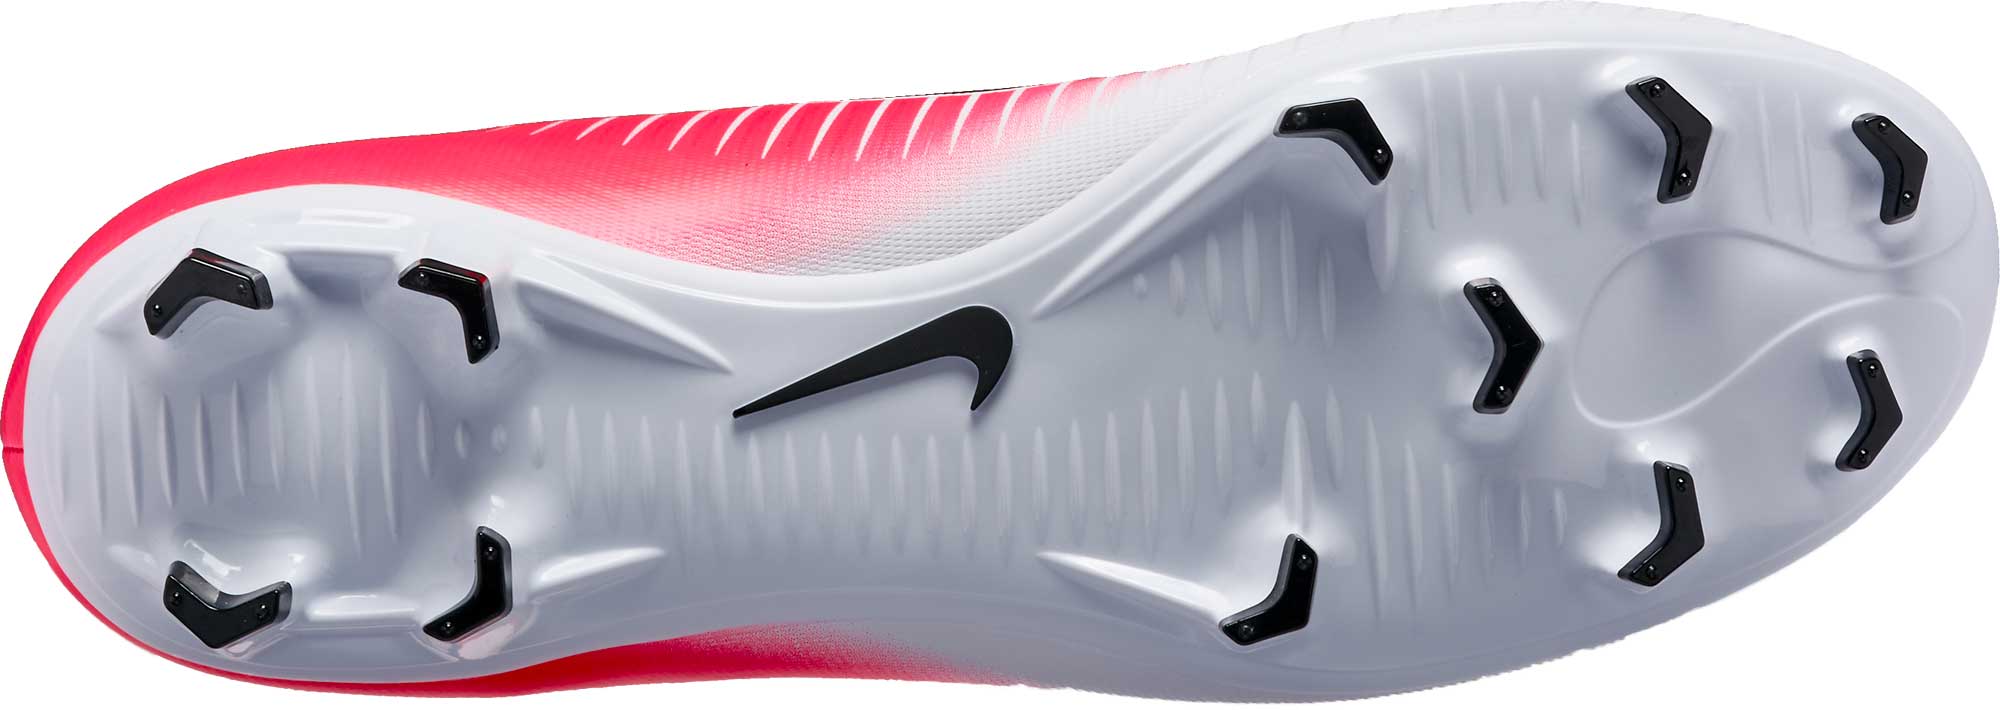 Dosering scheuren Brandweerman Nike Mercurial Victory VI - Pink Mercurial Cleats